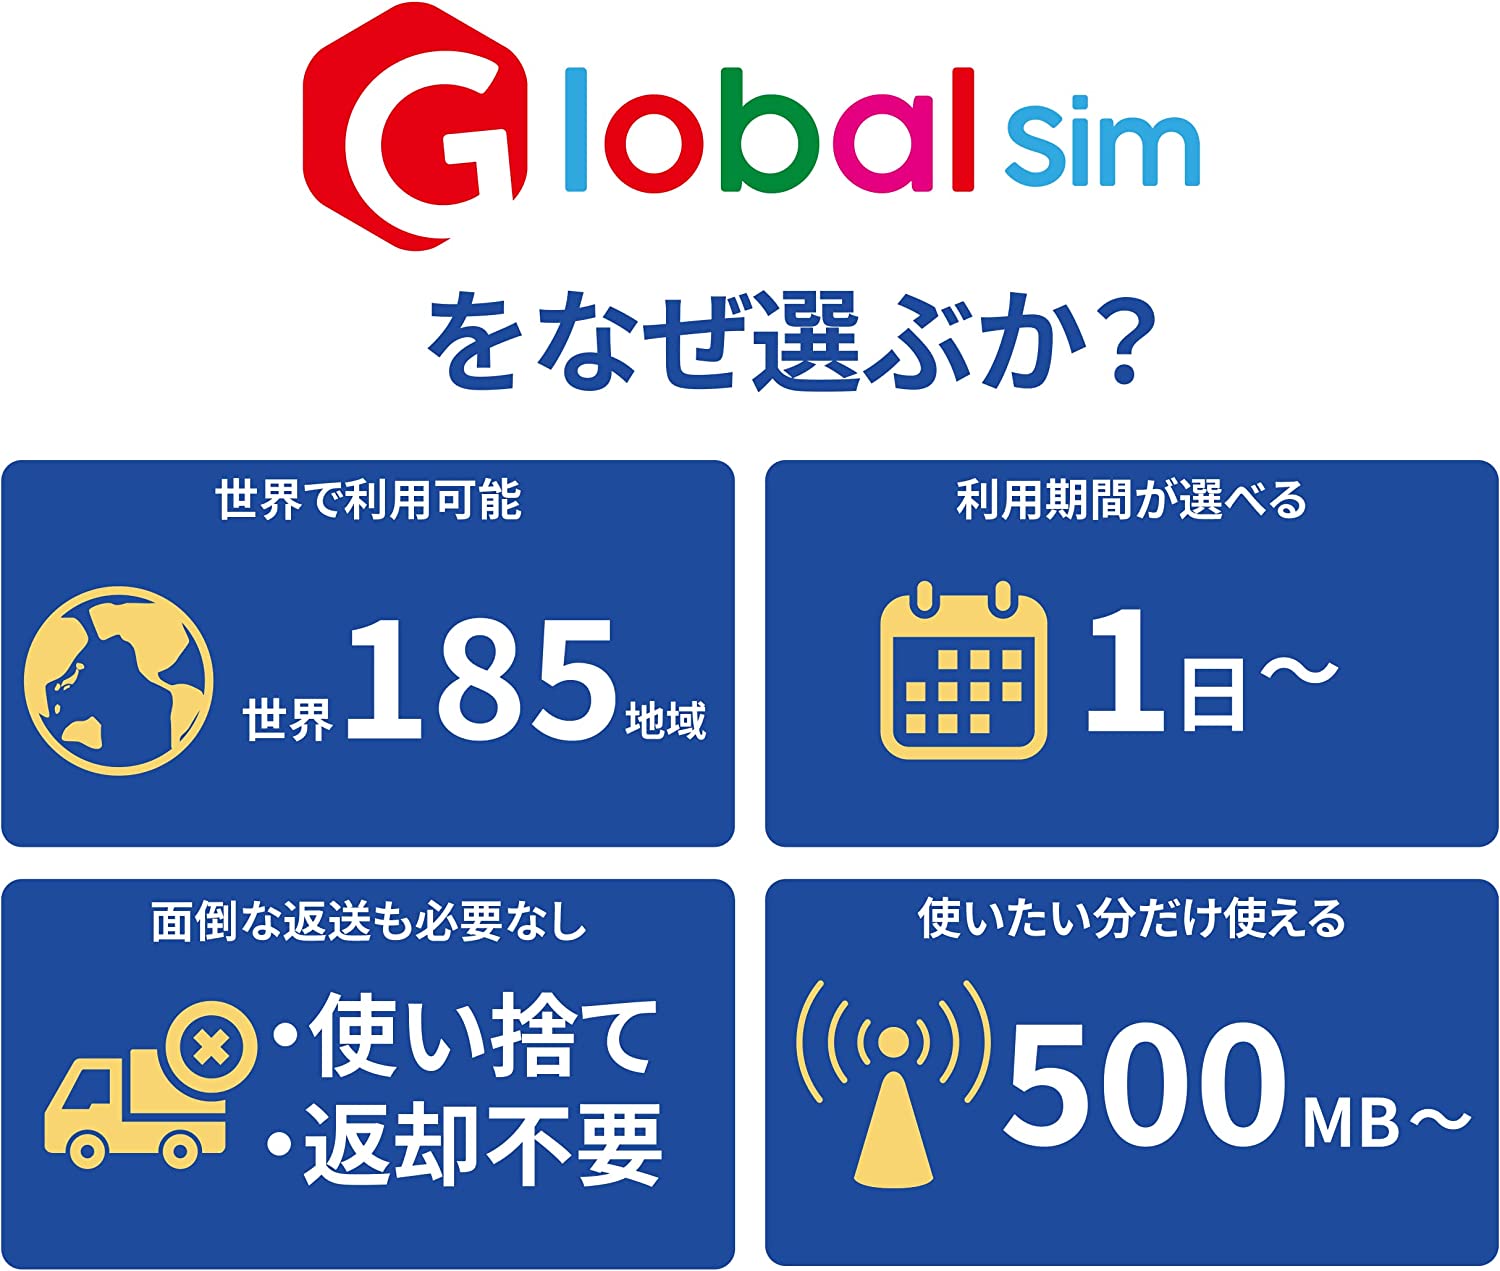 84%OFF!】GLOBAL SIM シンガポール 7日間 データ通信専用 端末のみ対応 3GBデータプラン シムフリー 追加費用なし・契約不要  SIMカード